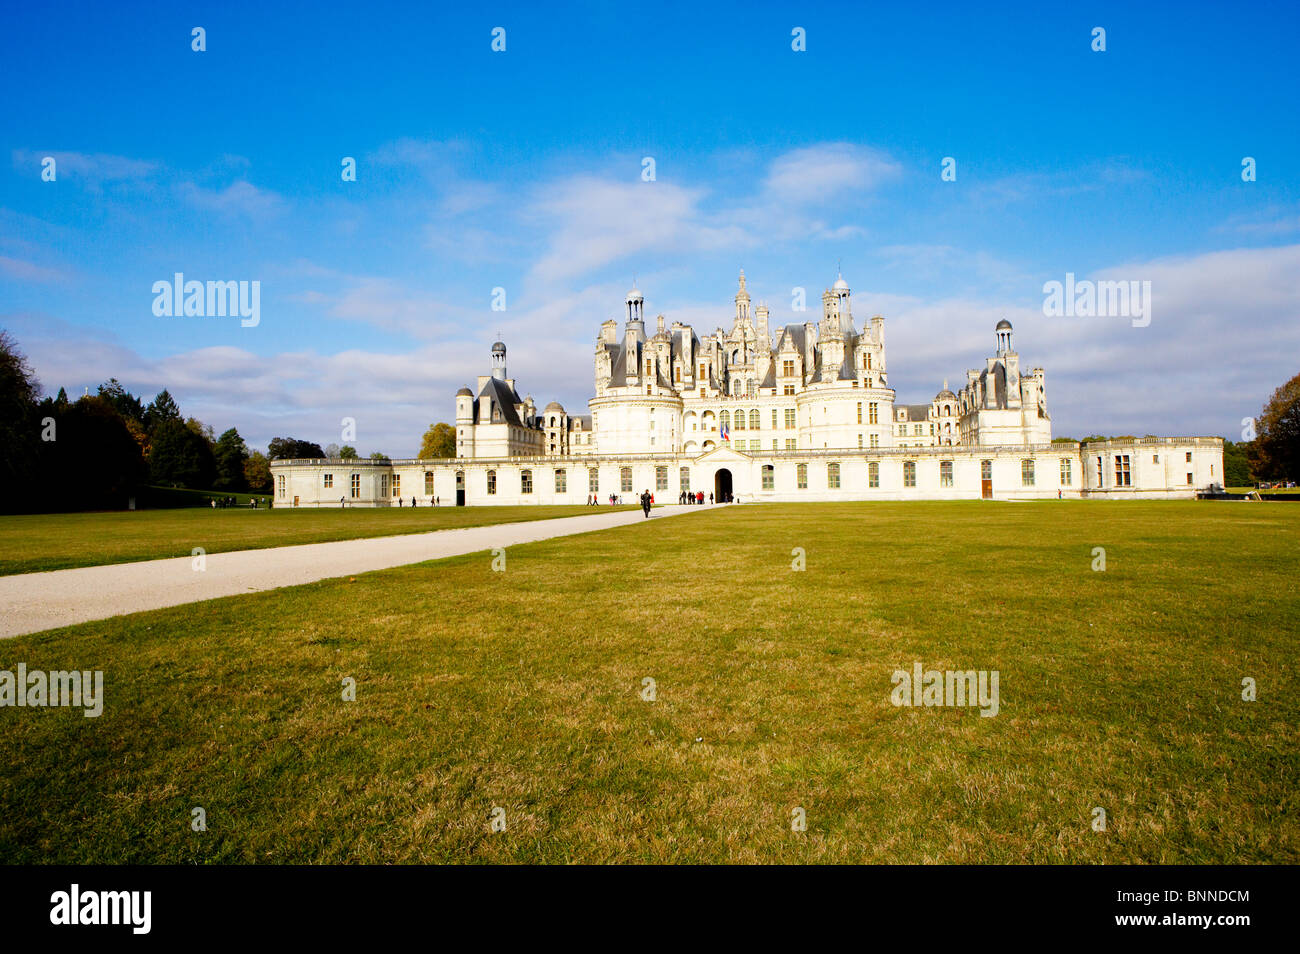 Chateau de Chambord, Loire, France Stock Photo